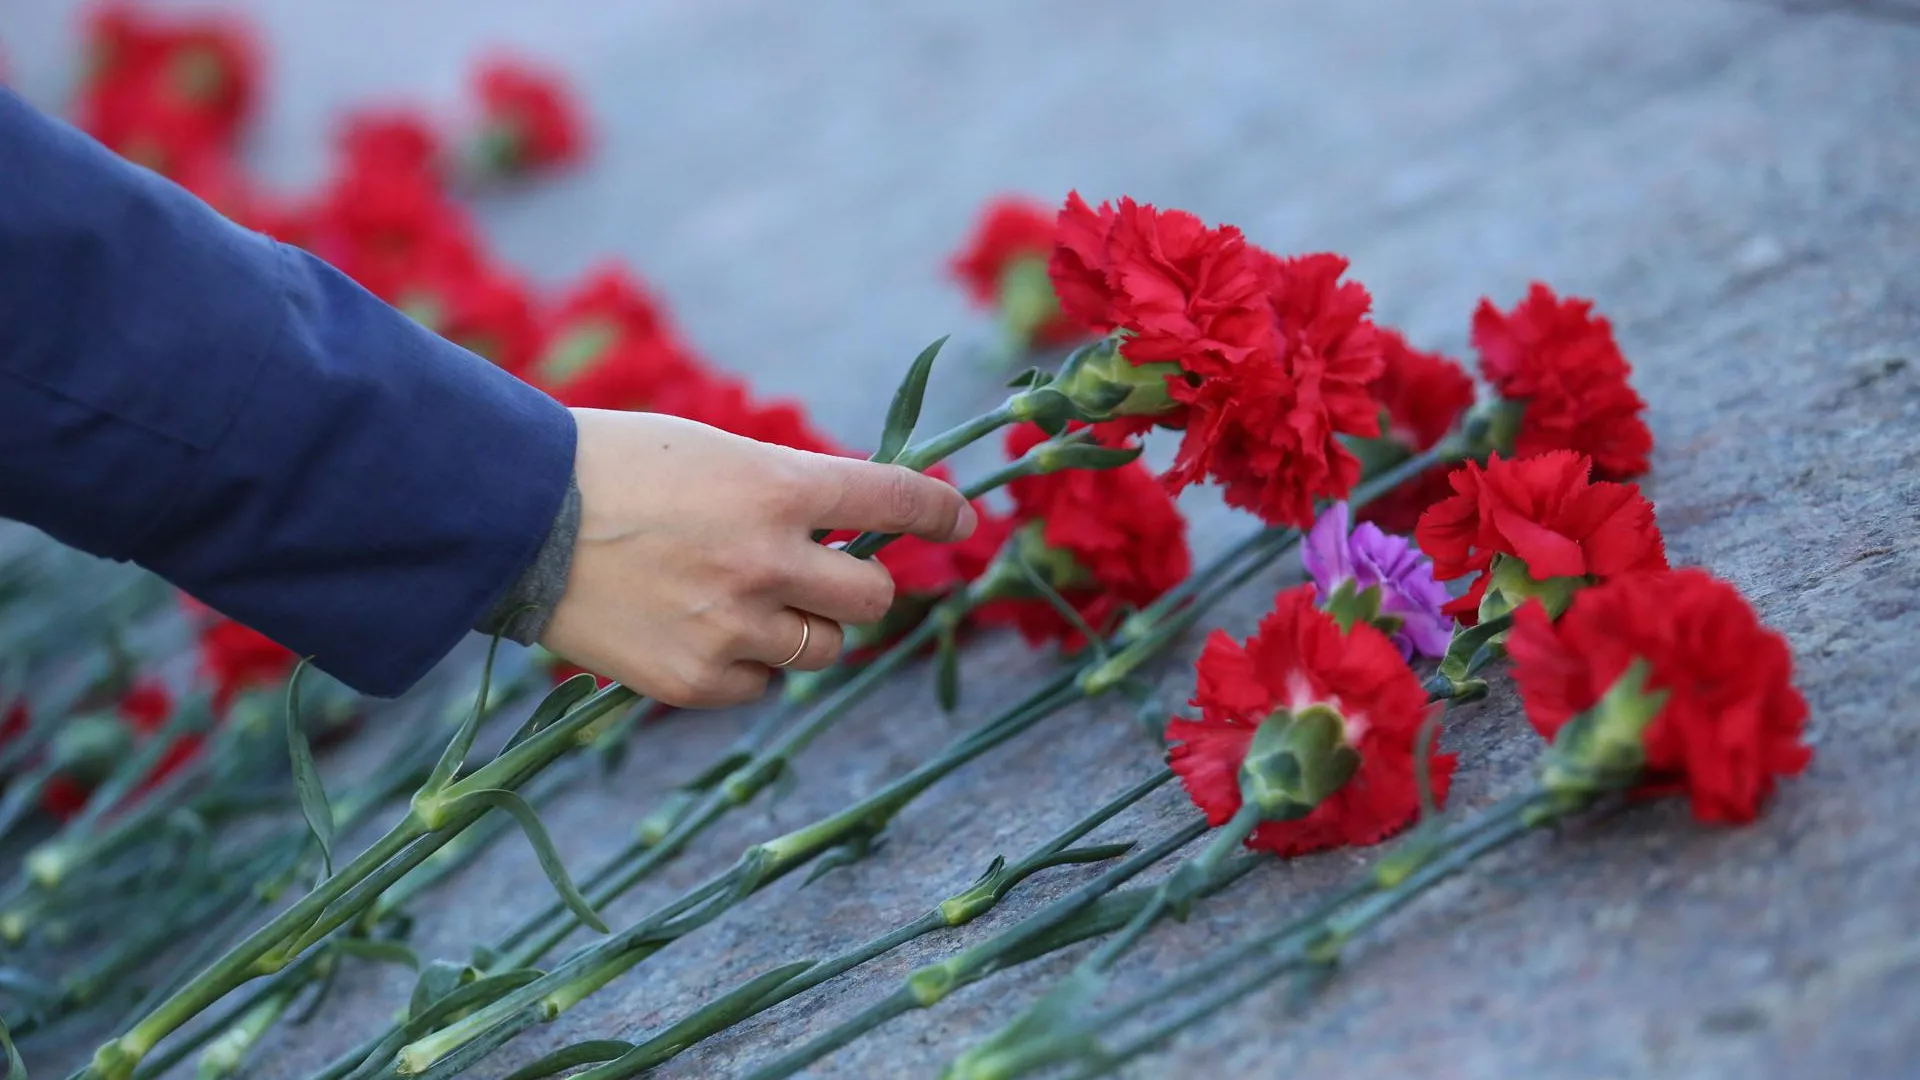 День памяти, посвященный годовщине аварии на ЧАЭС, пройдет в Химках 26 апреля